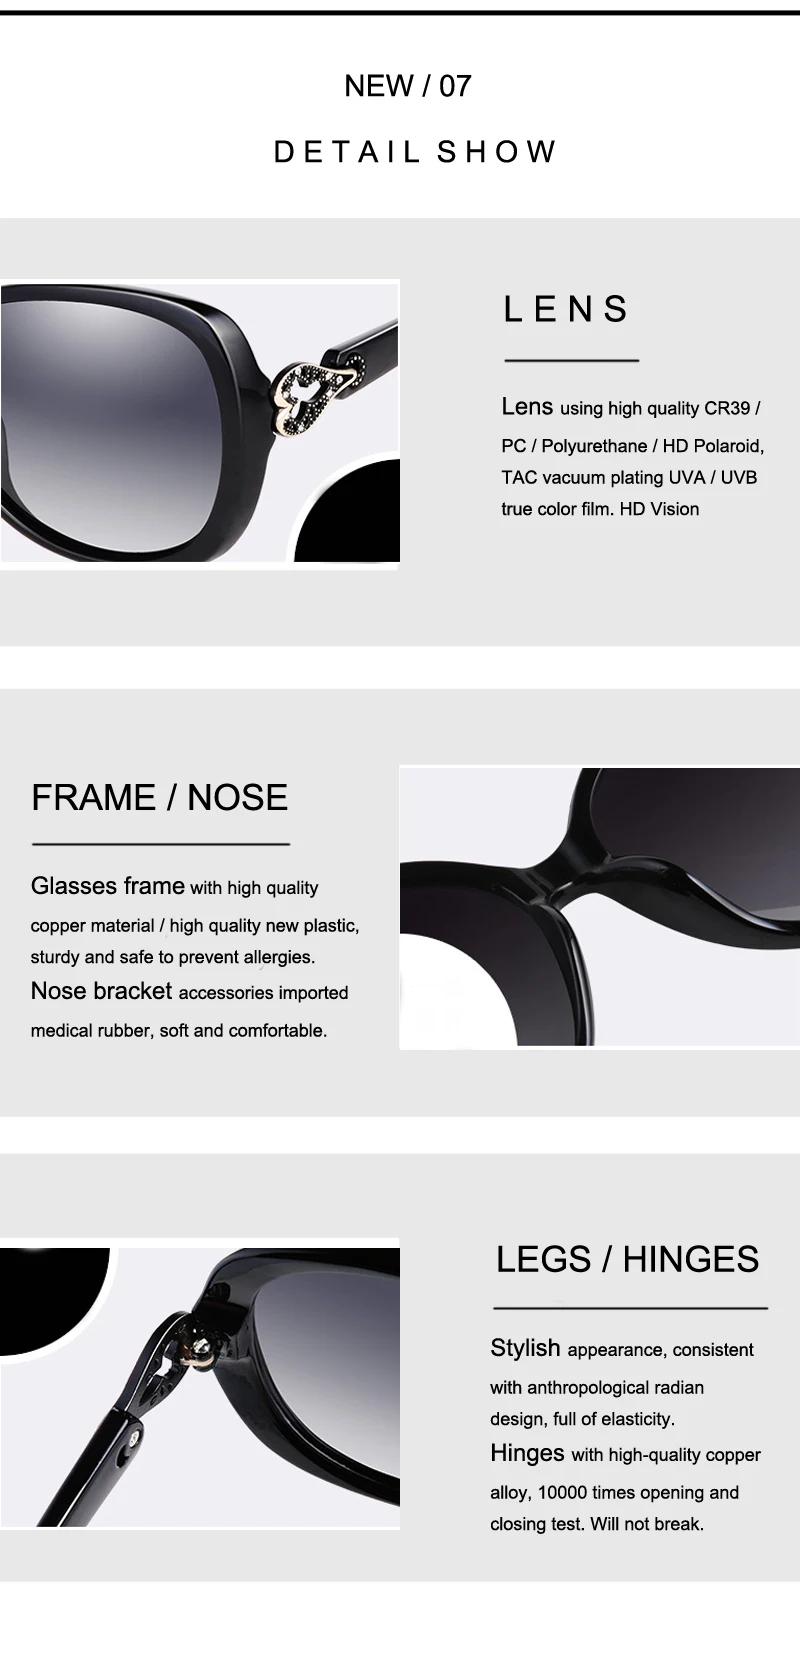 FEISHINI брендовые дизайнерские пластиковые черные овальные солнцезащитные очки в форме сердца, женские Поляризованные Ретро очки UV400, модные корейские женские очки